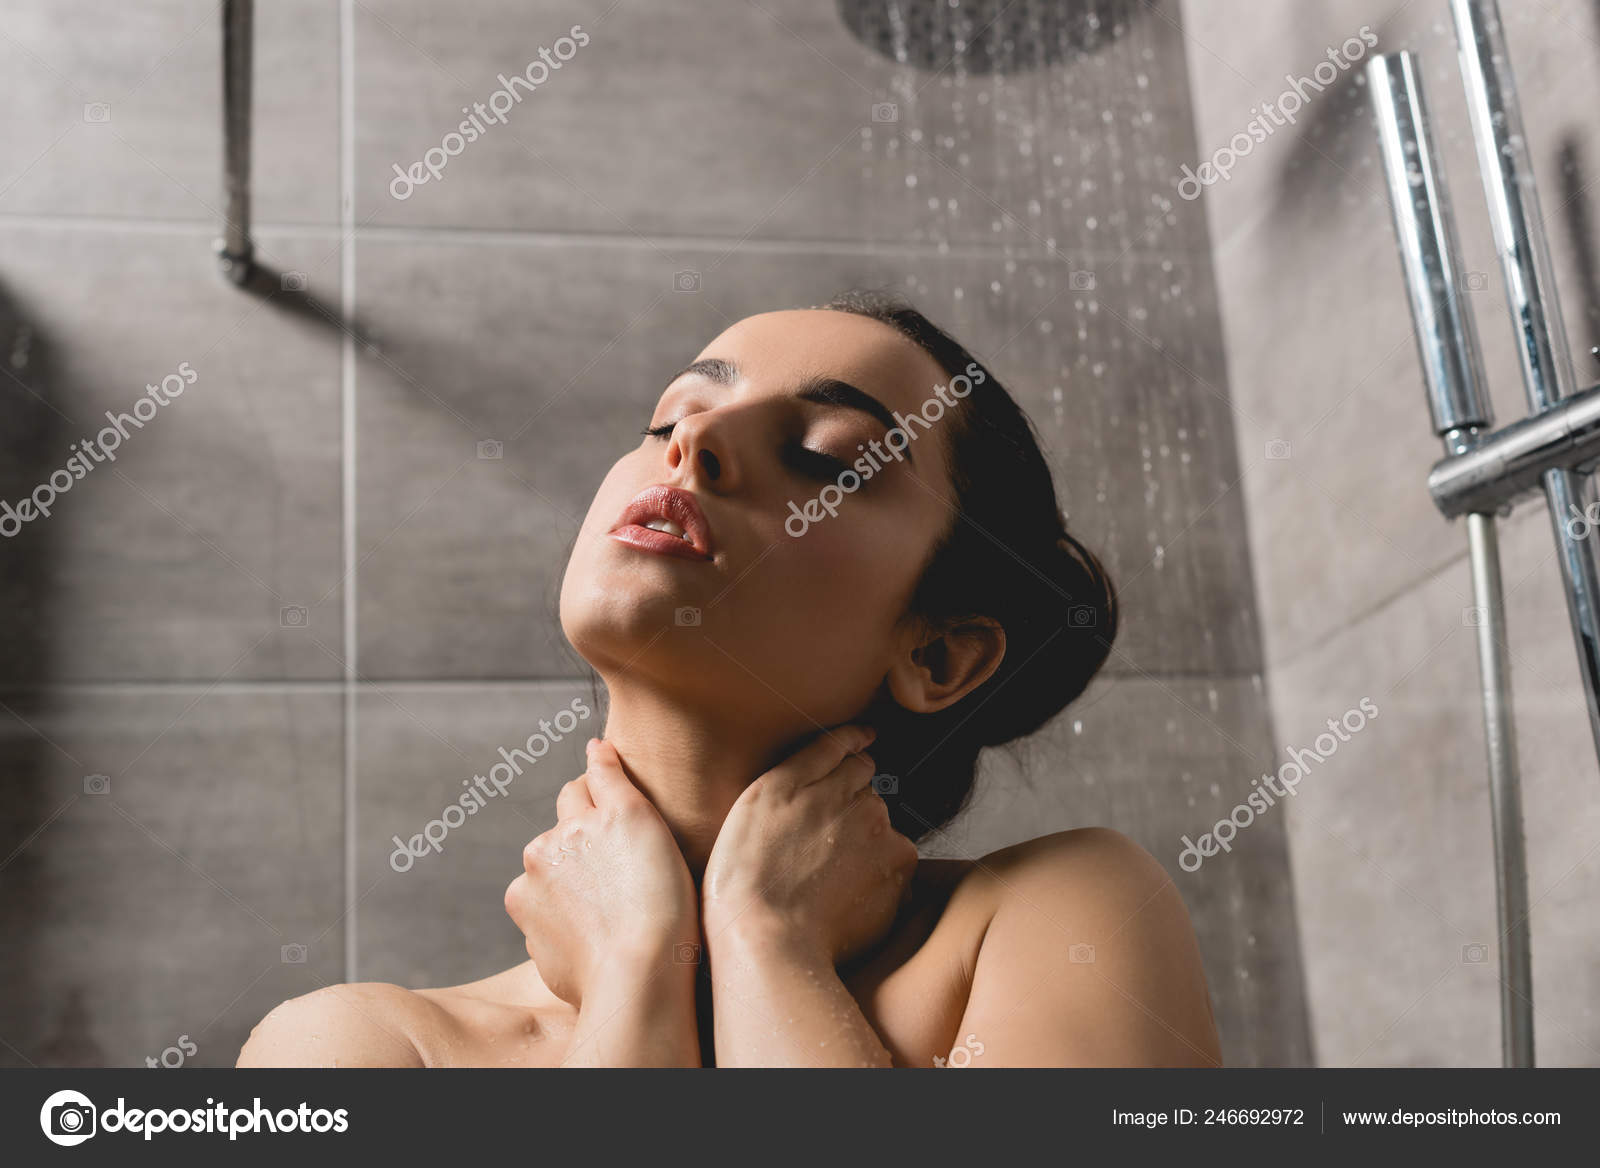 Women Nude Shower